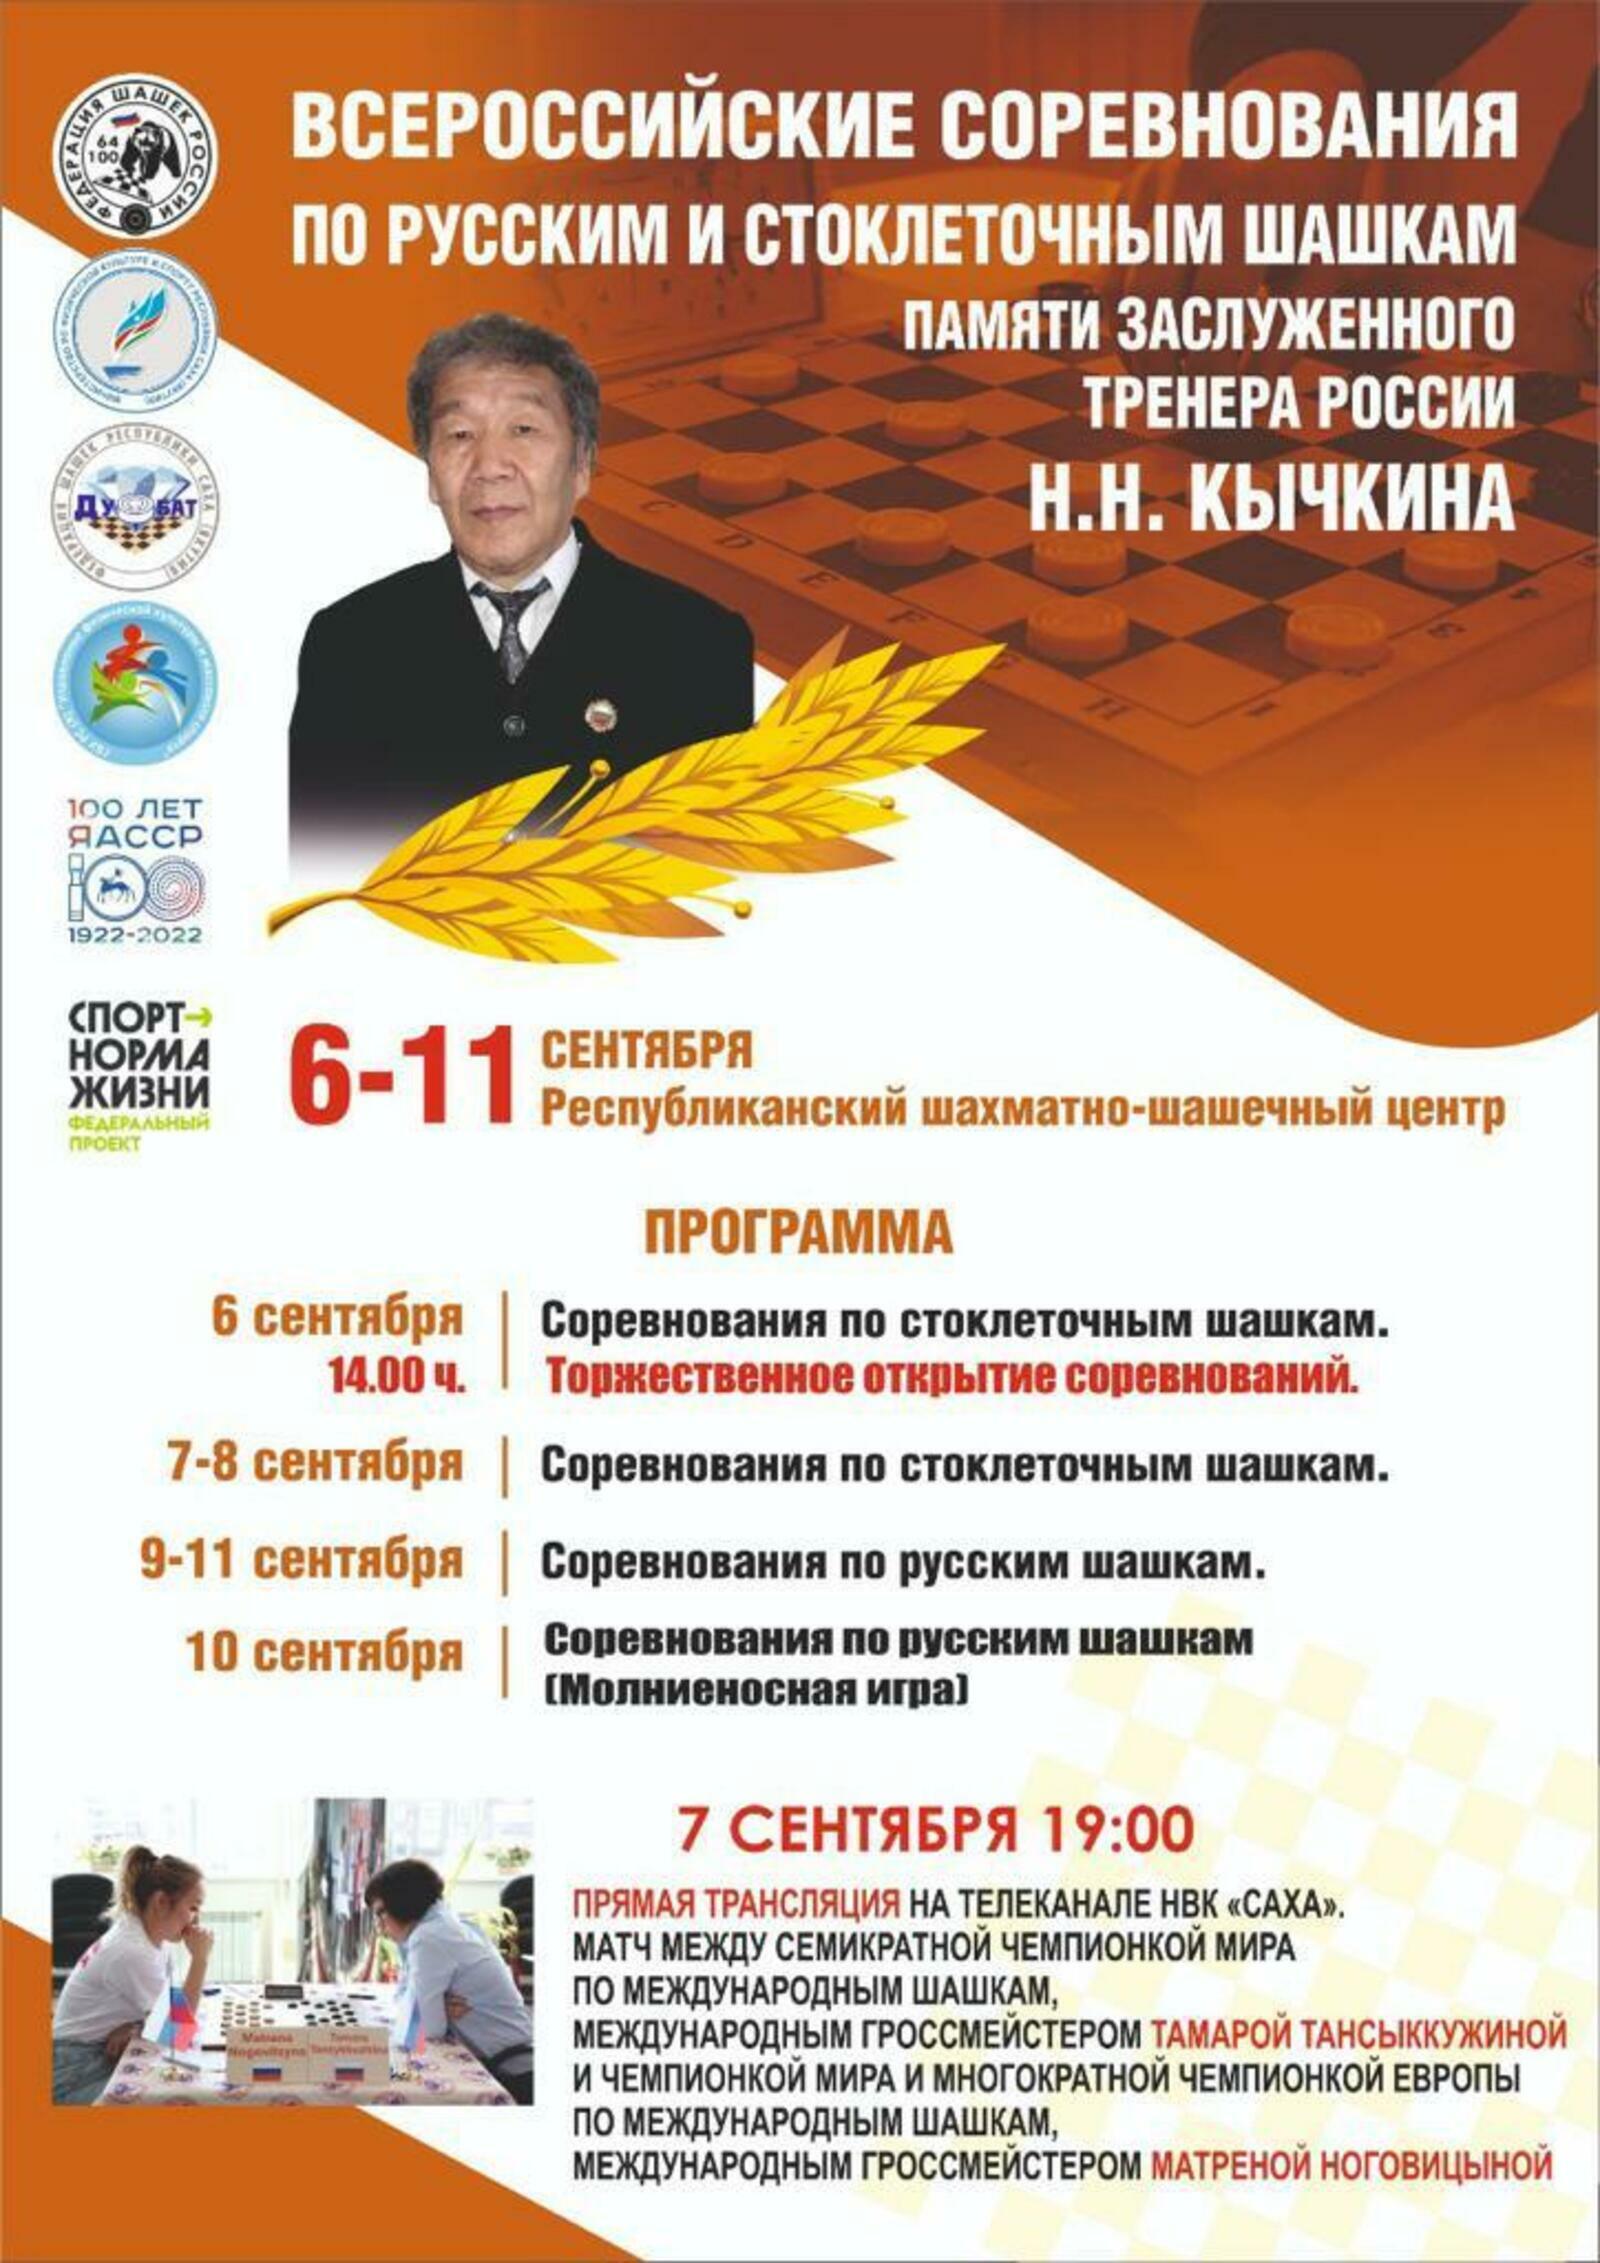 С 6 по по 13 сентября 2022 года в Якутске пройдут Всероссийские соревнования по русским и стоклеточным шашкам памяти заслуженного тренера России Кычкина